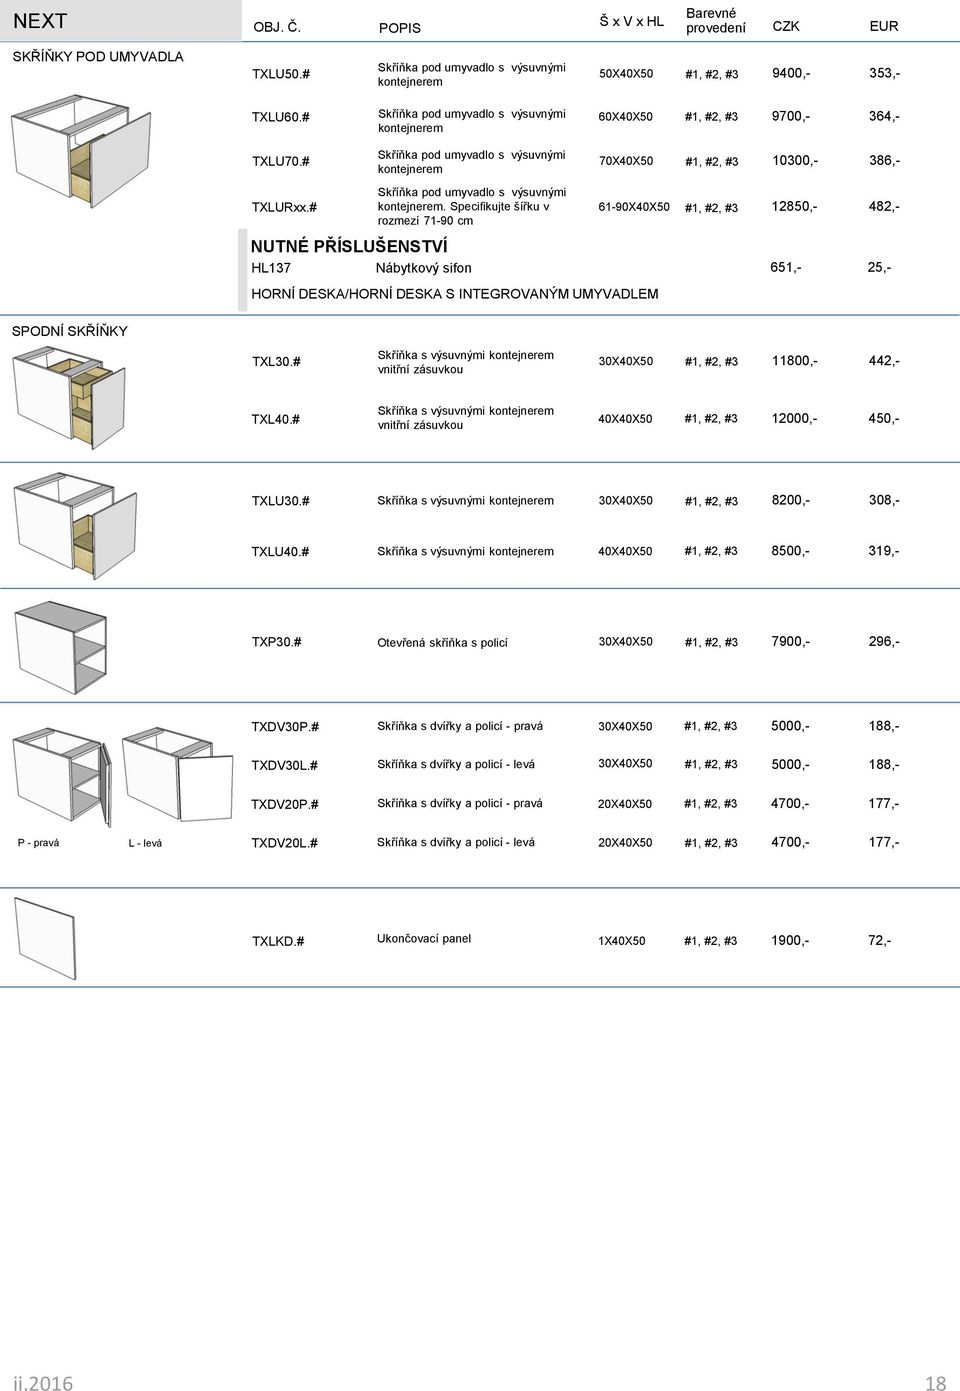 # Ukončovací panel 1X40X50 190 72,- SPODNÍ SKŘÍŇKY TXL30.# Skříňka s výsuvnými kontejnerem vnitřní zásuvkou 30X40X50 1180 442,- TXL40.